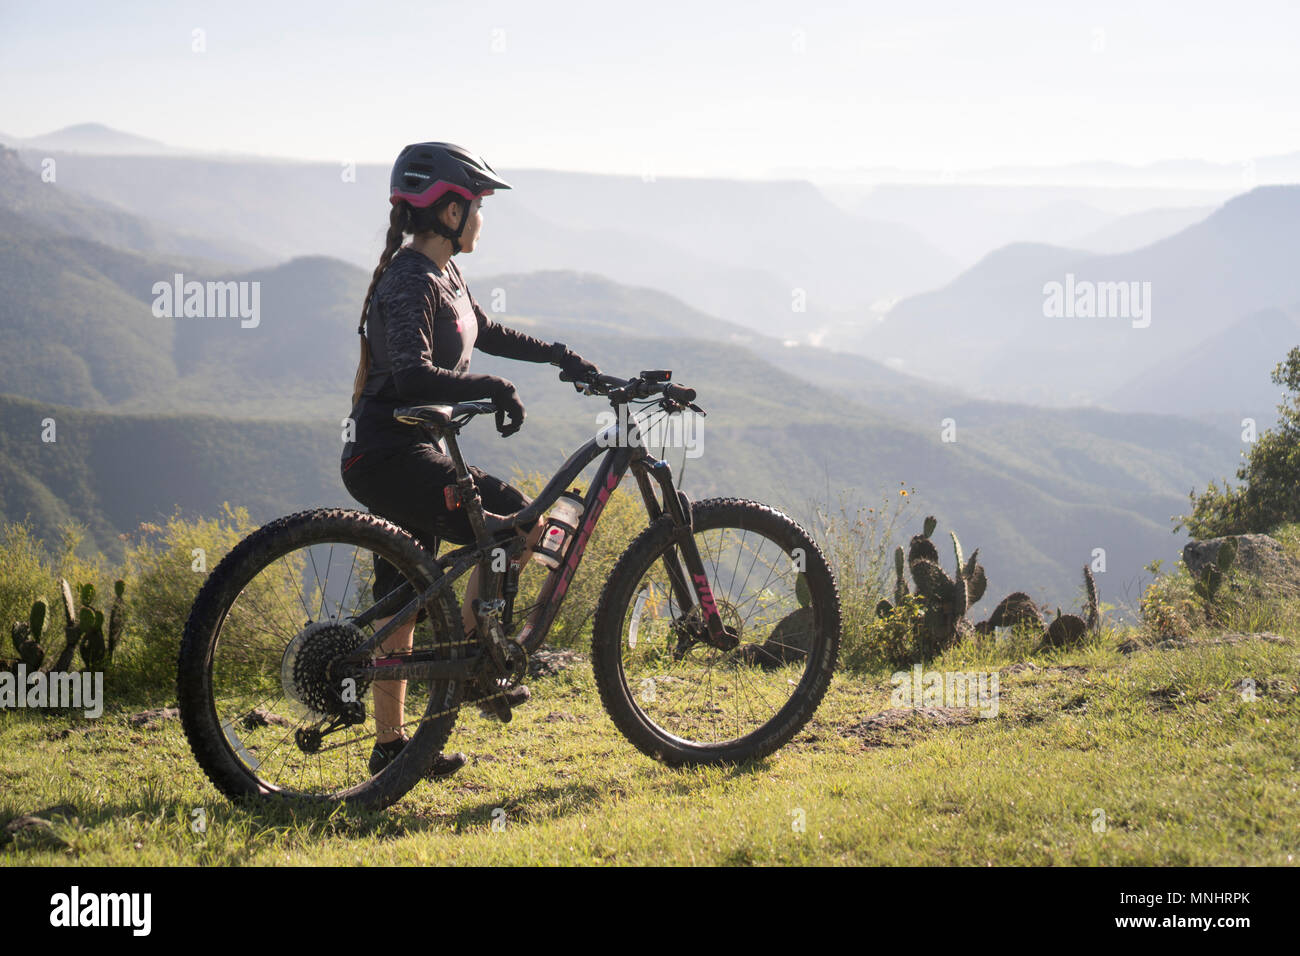 Vista laterale della donna in piedi con mountain bike in ambiente naturale con le montagne sullo sfondo, pena del Aire, Huasca de Ocampo, hidalgo, Messico Foto Stock